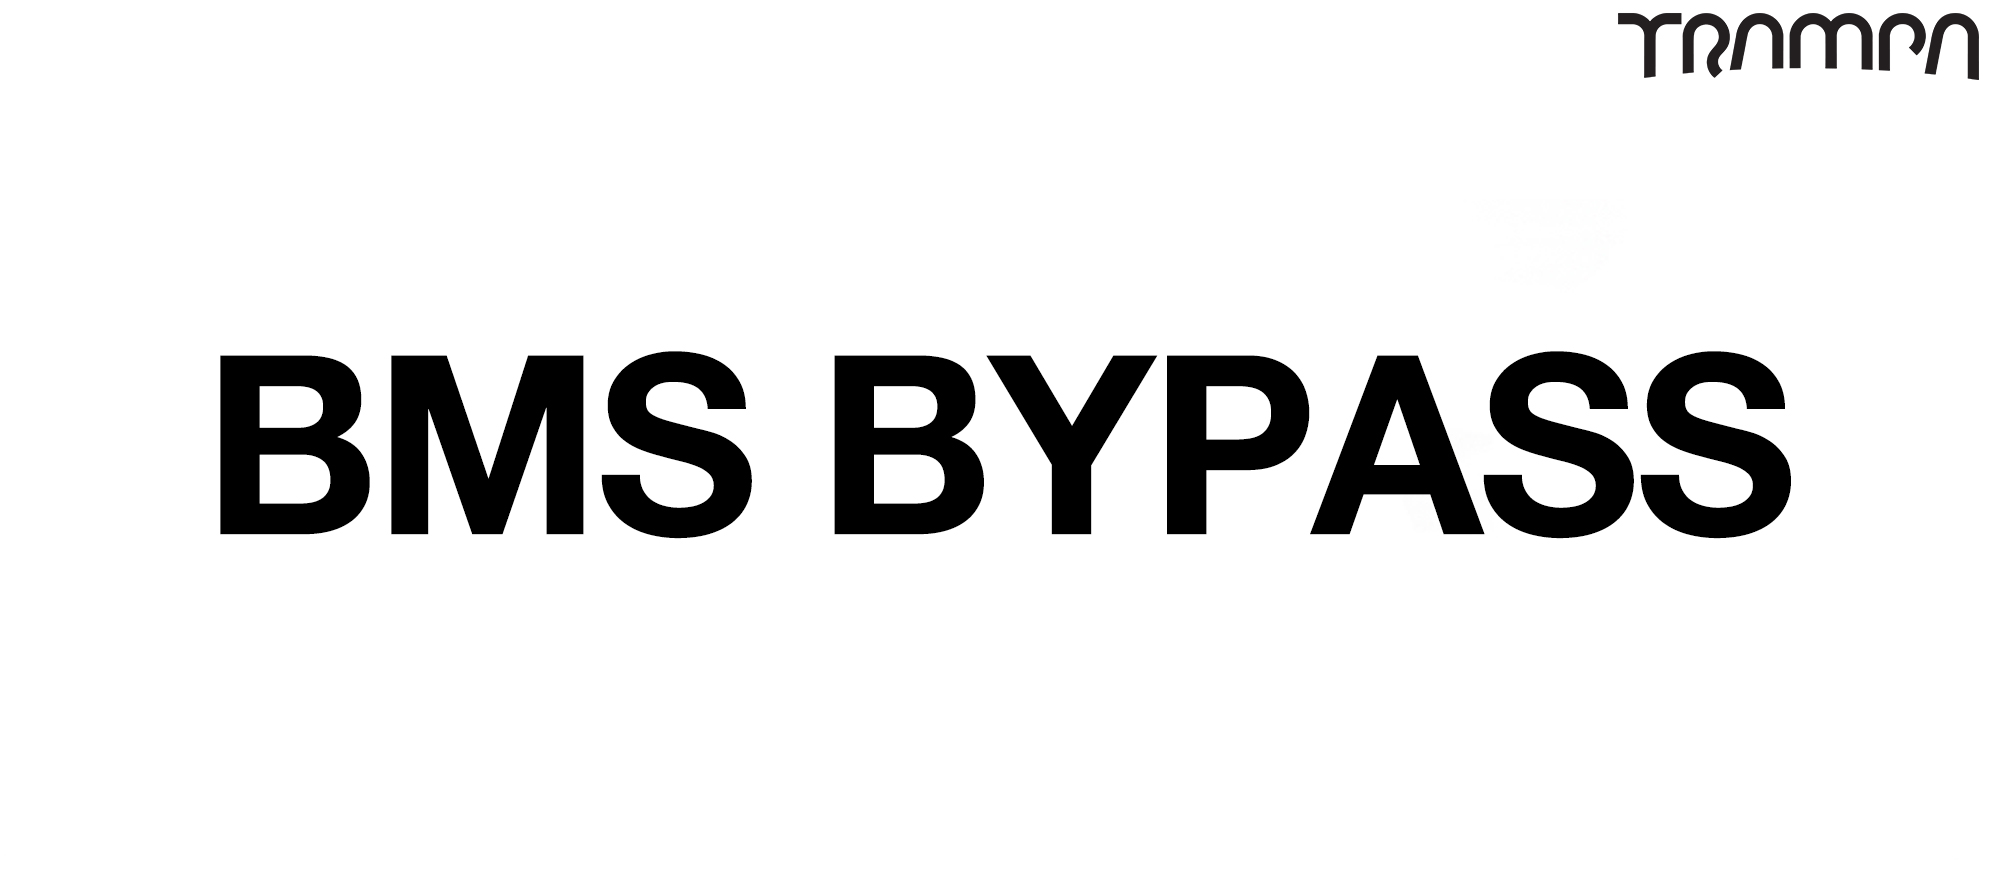 BMS Bypass on Surron or Tolarius